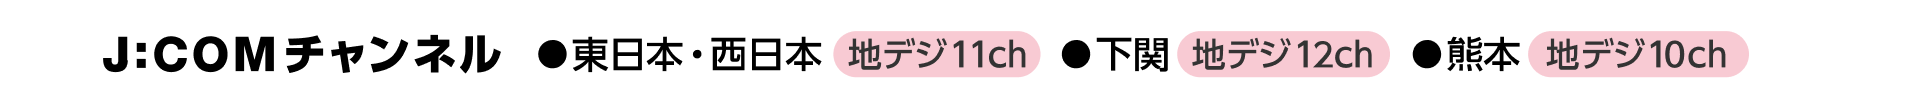 J:COMチャンネル 東日本西日本:地デジ11ch、下関:地デジ12ch、熊本:地デジ10ch